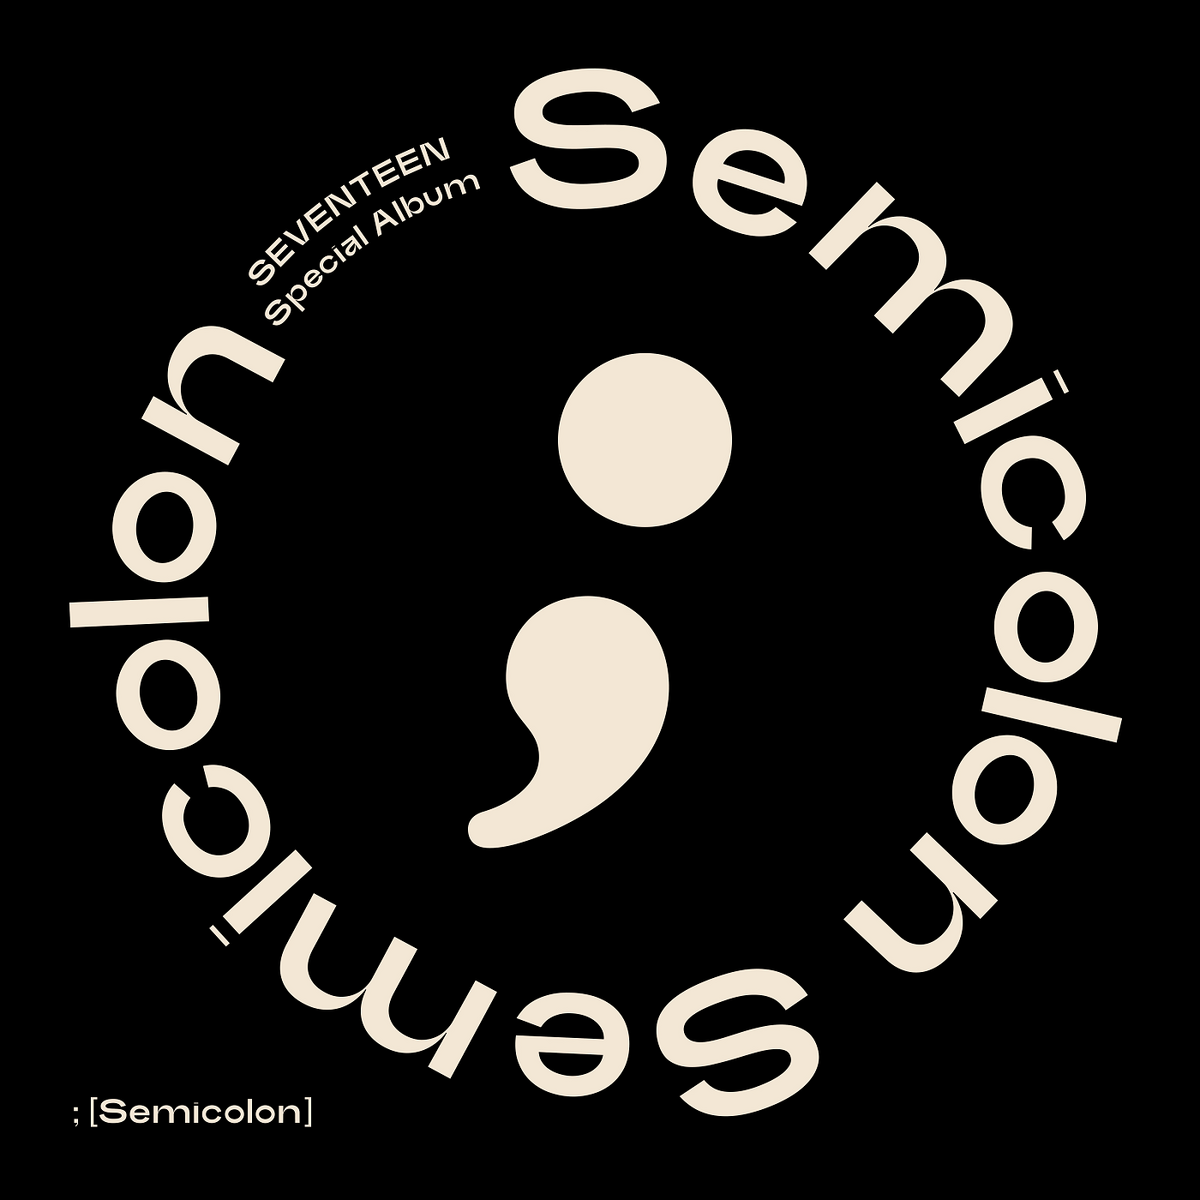 Semicolon | Kpop Wiki | Fandom